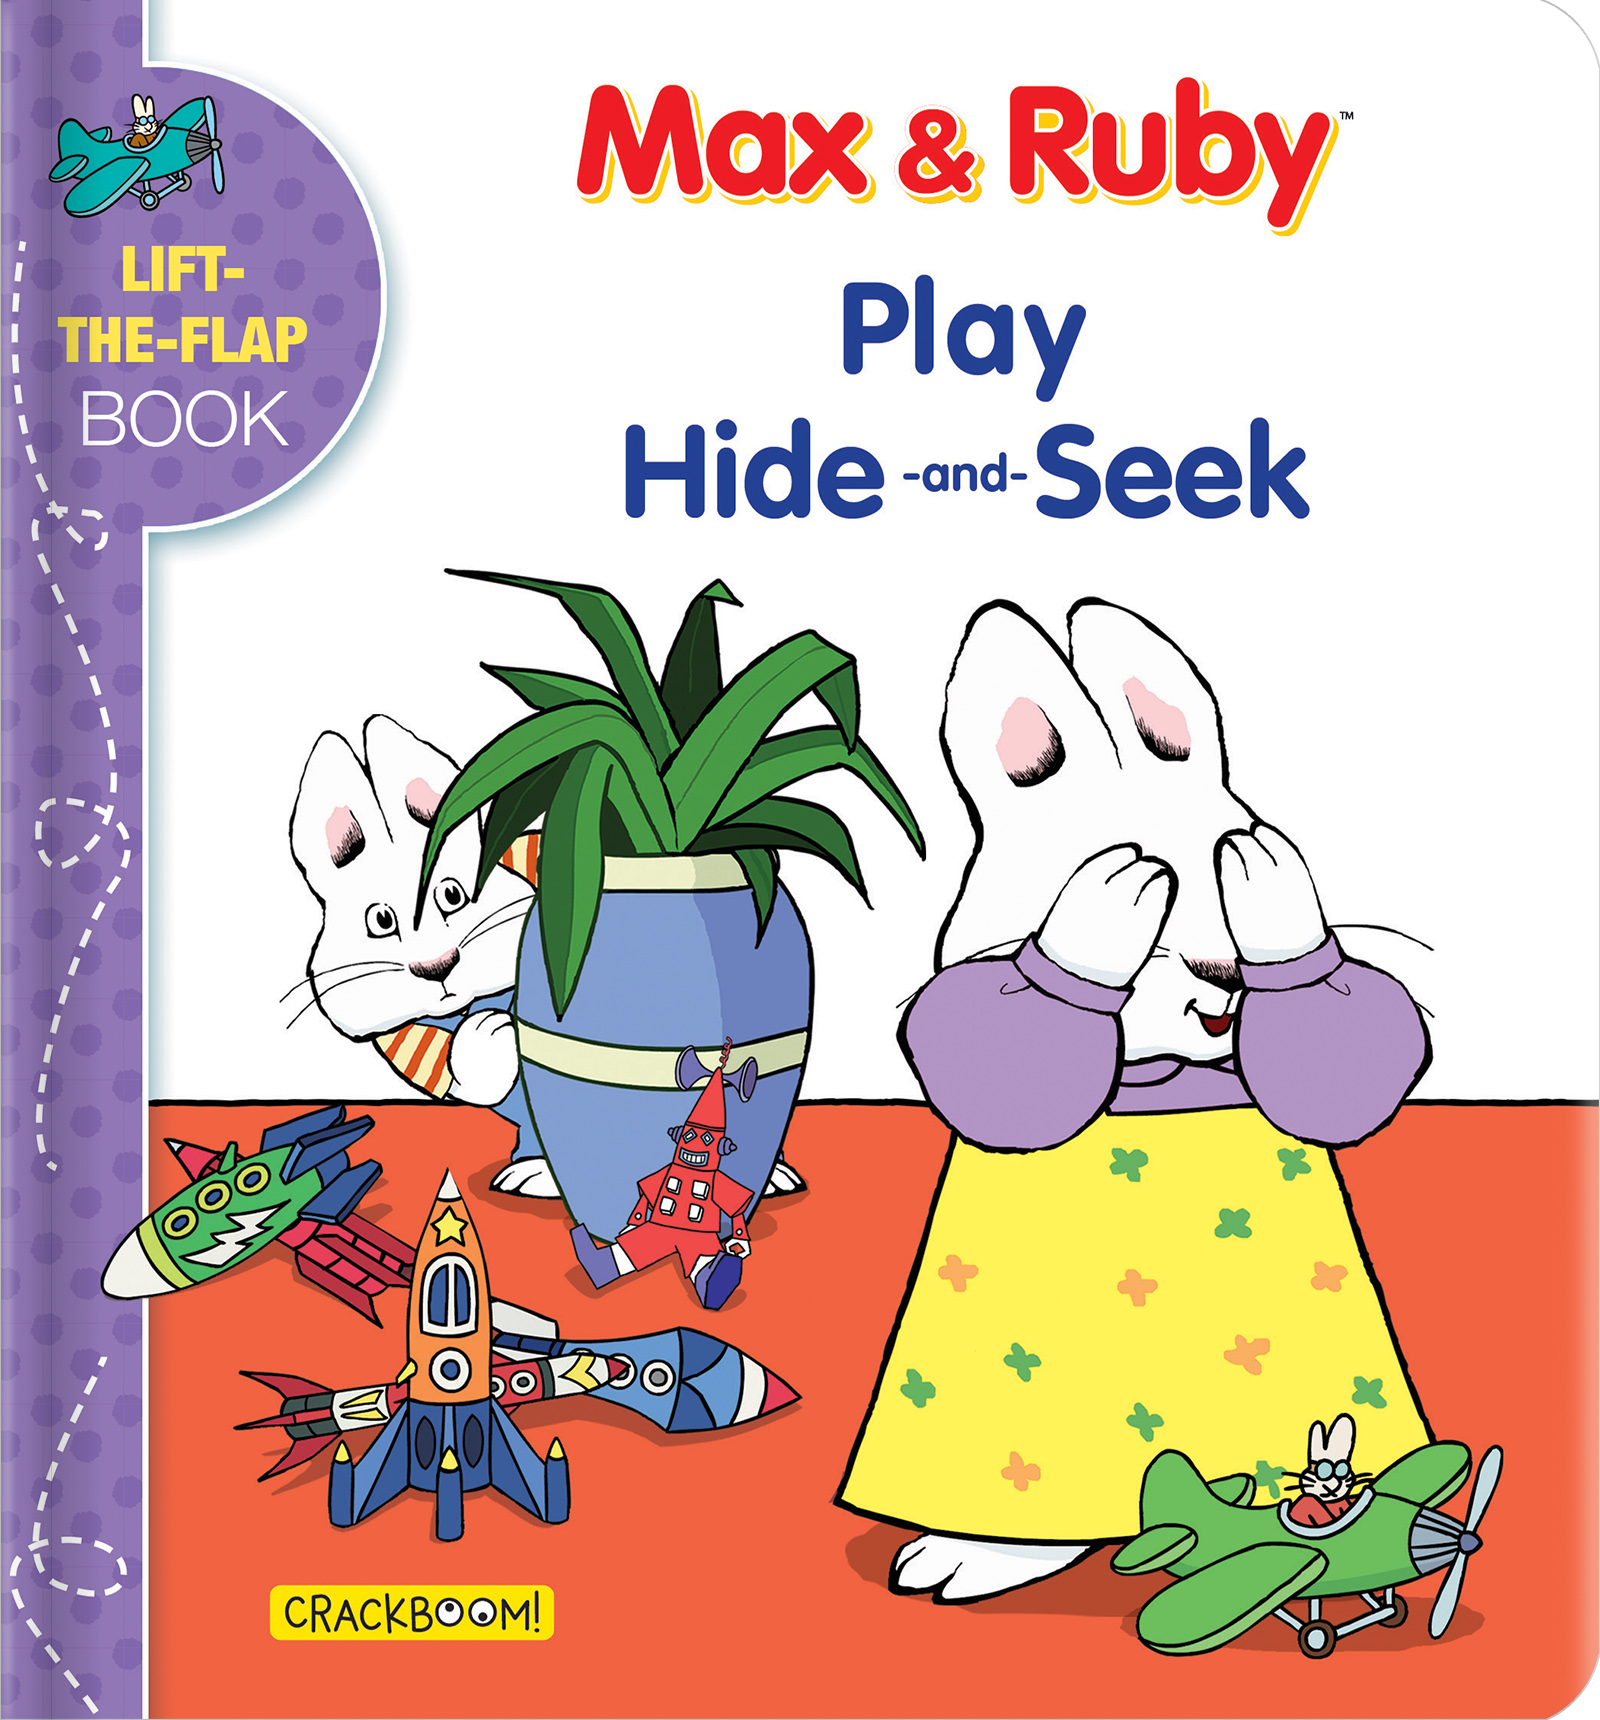 Max & Ruby Play Hide-and-Seek